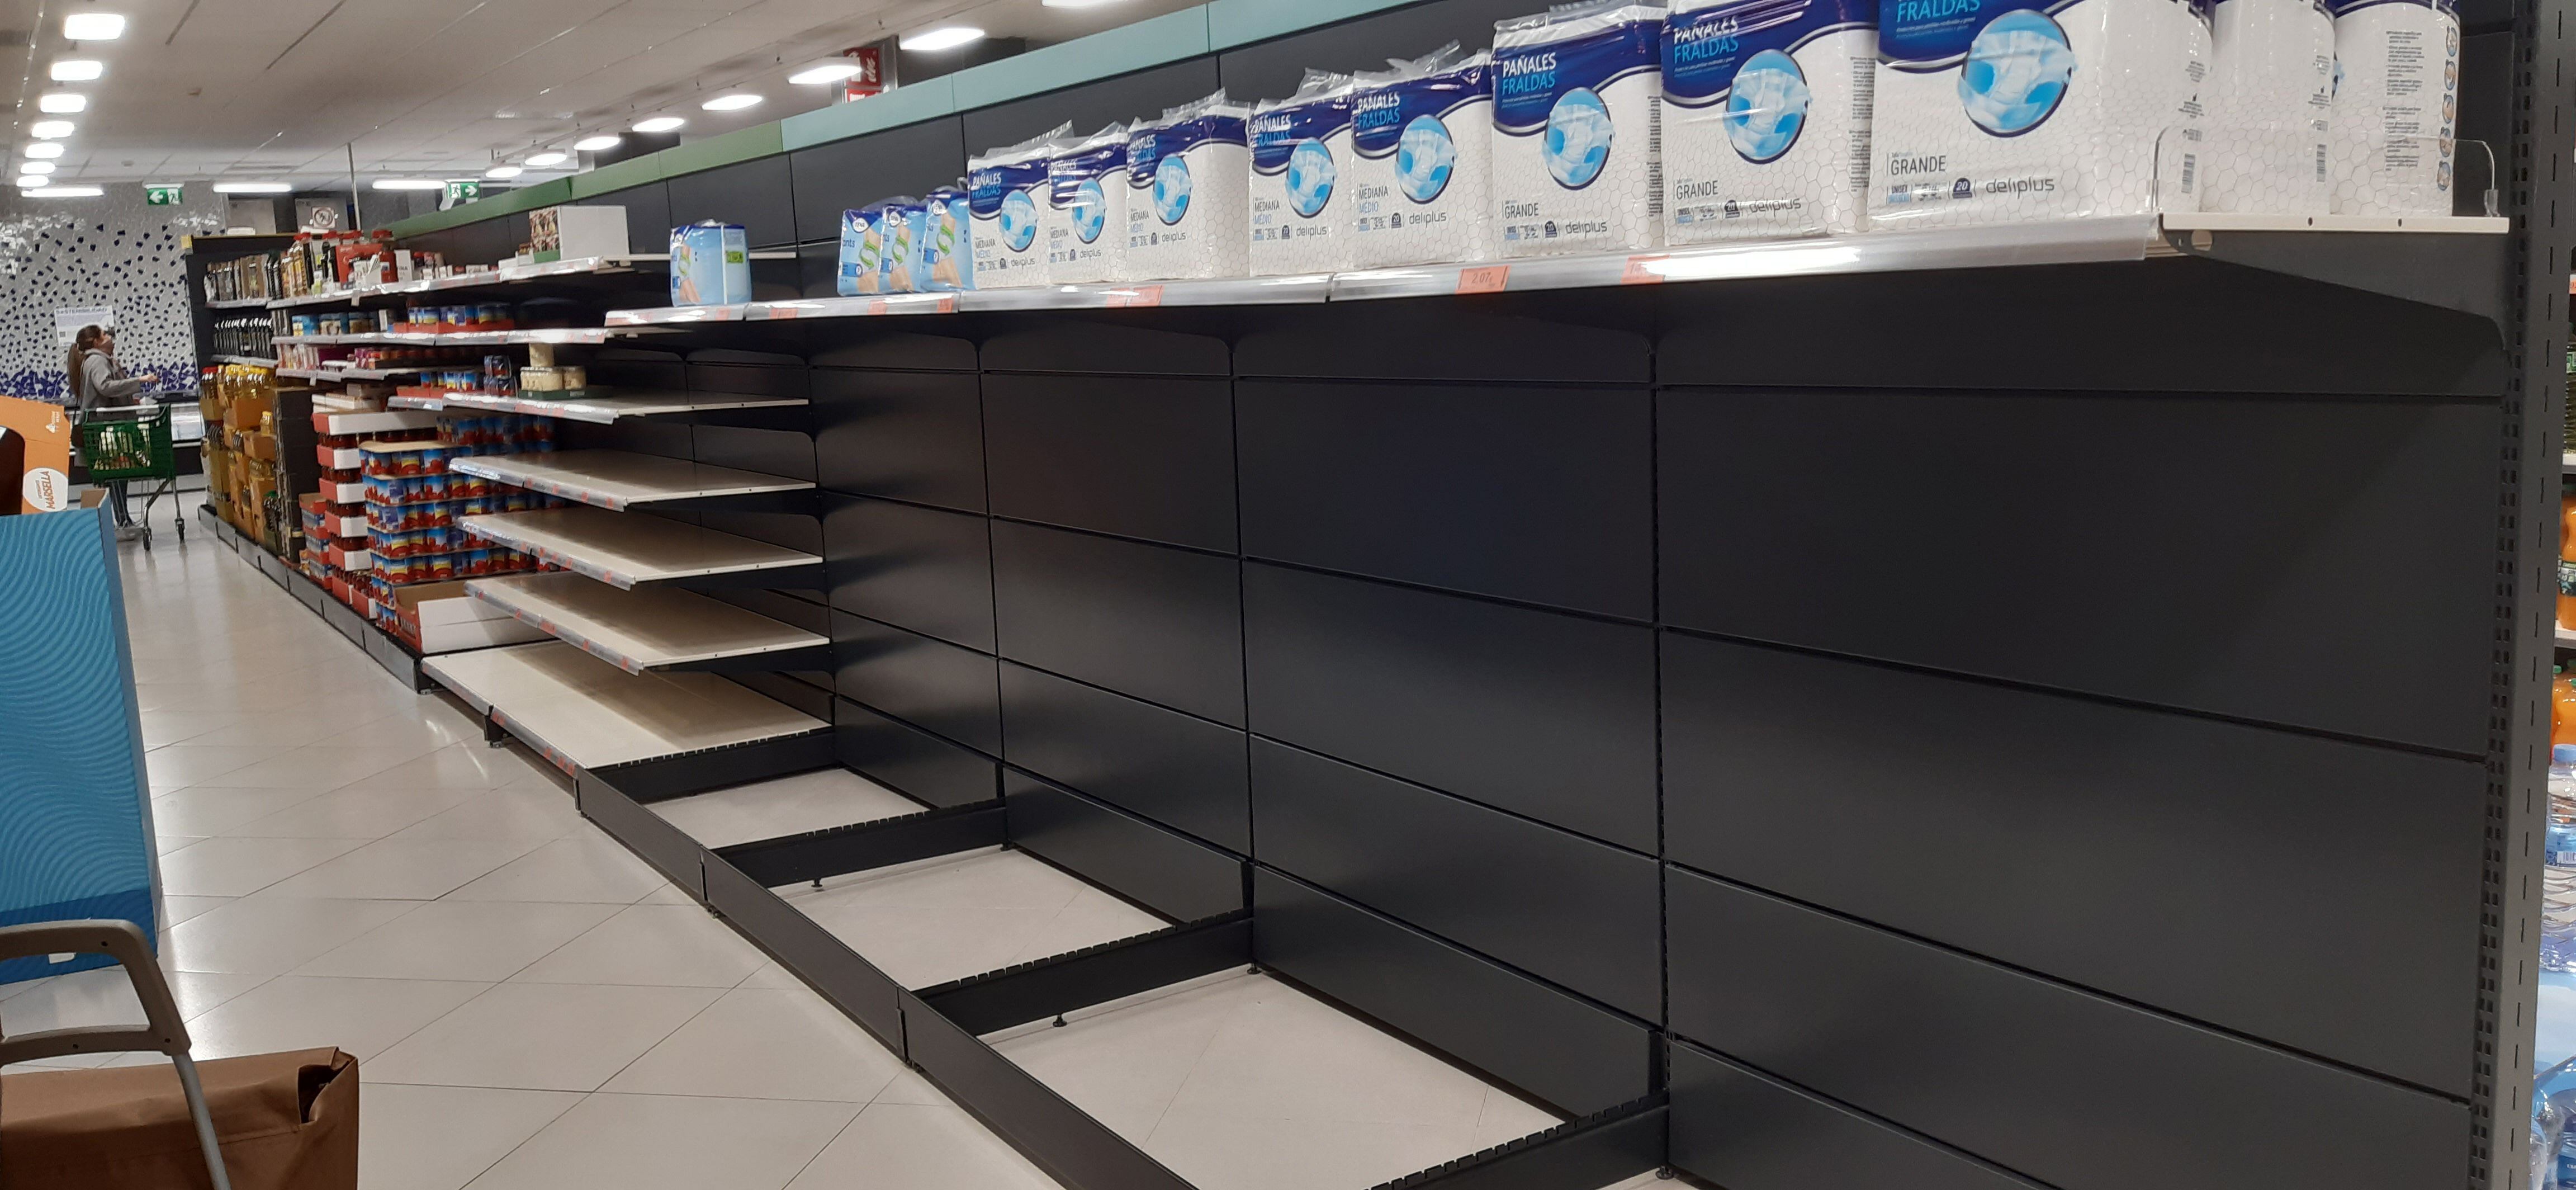 Los supermercados comienzan a mostrar estanterías vacías